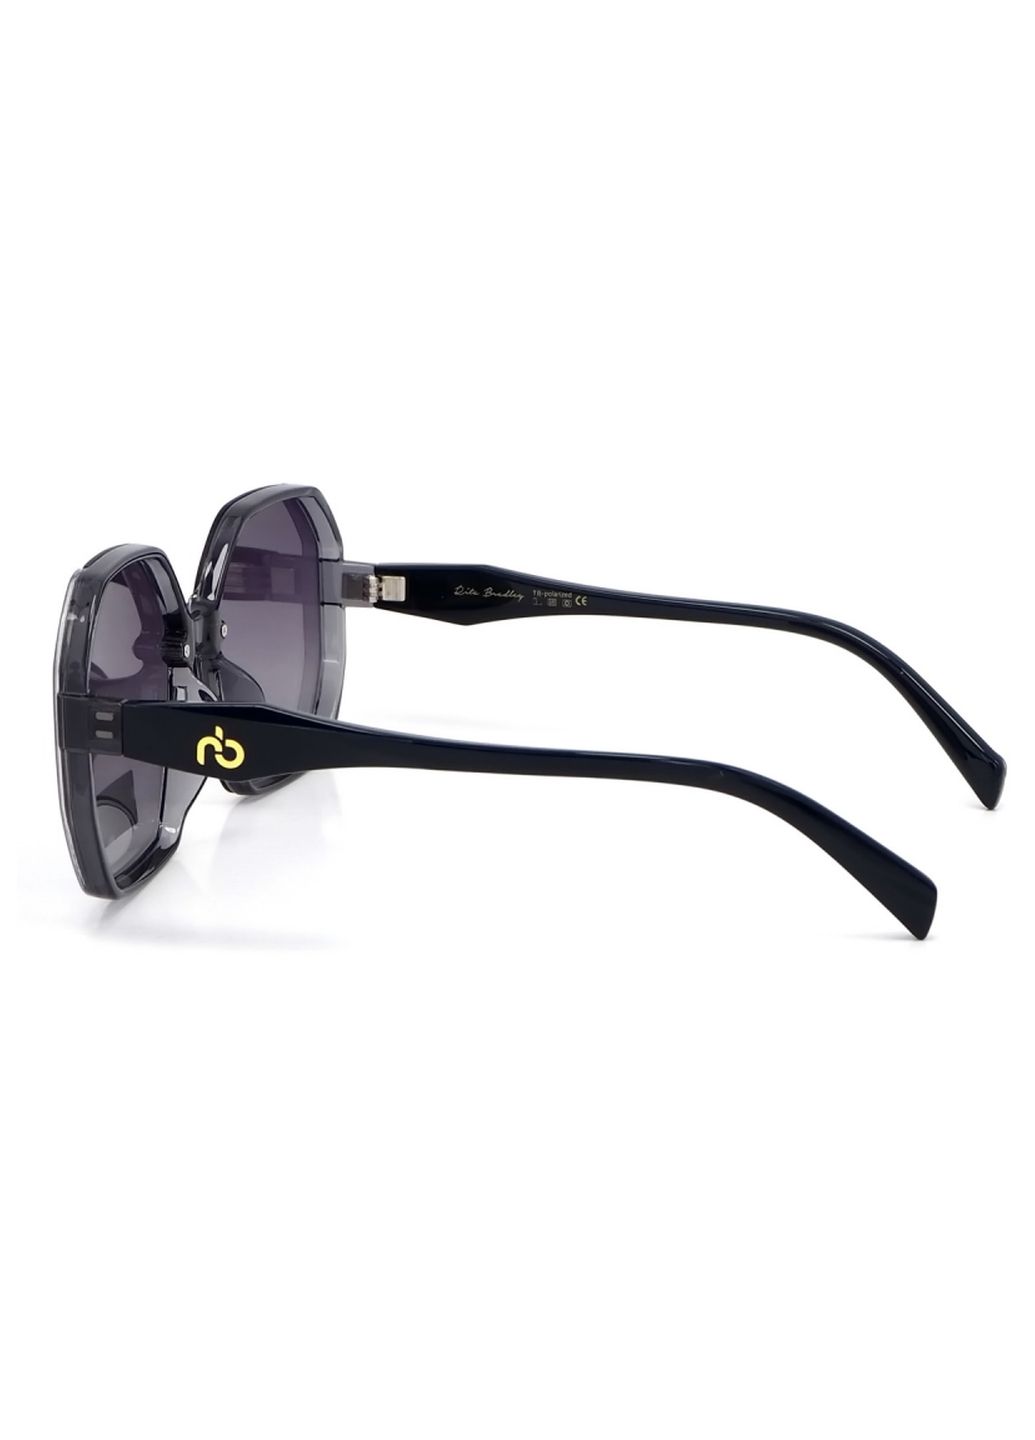 Купить Женские солнцезащитные очки Rita Bradley с поляризацией RB729 112068 в интернет-магазине